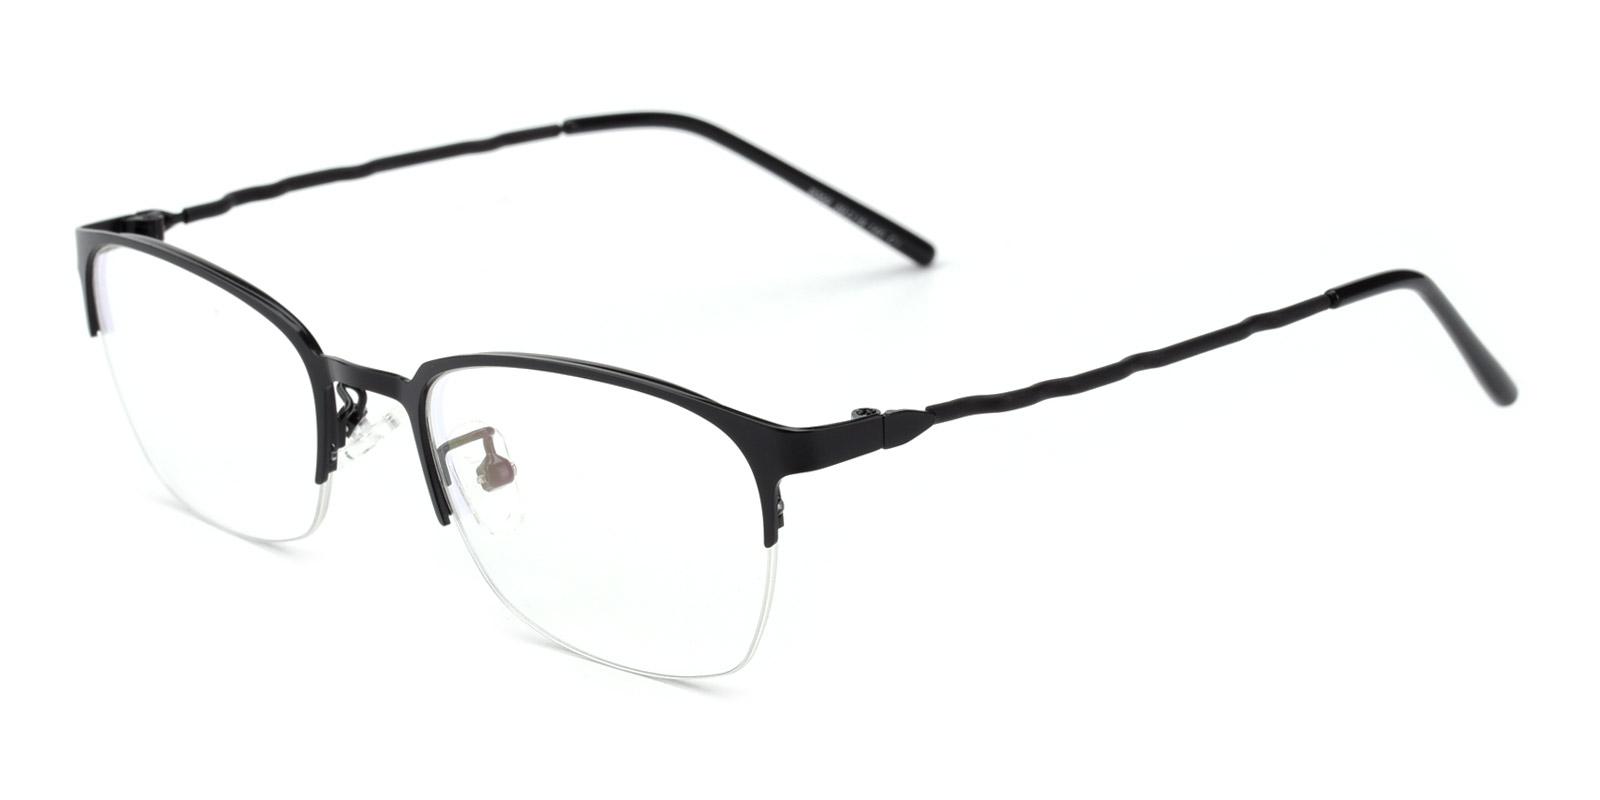 Lassiter Black Metal Eyeglasses , NosePads Frames from ABBE Glasses